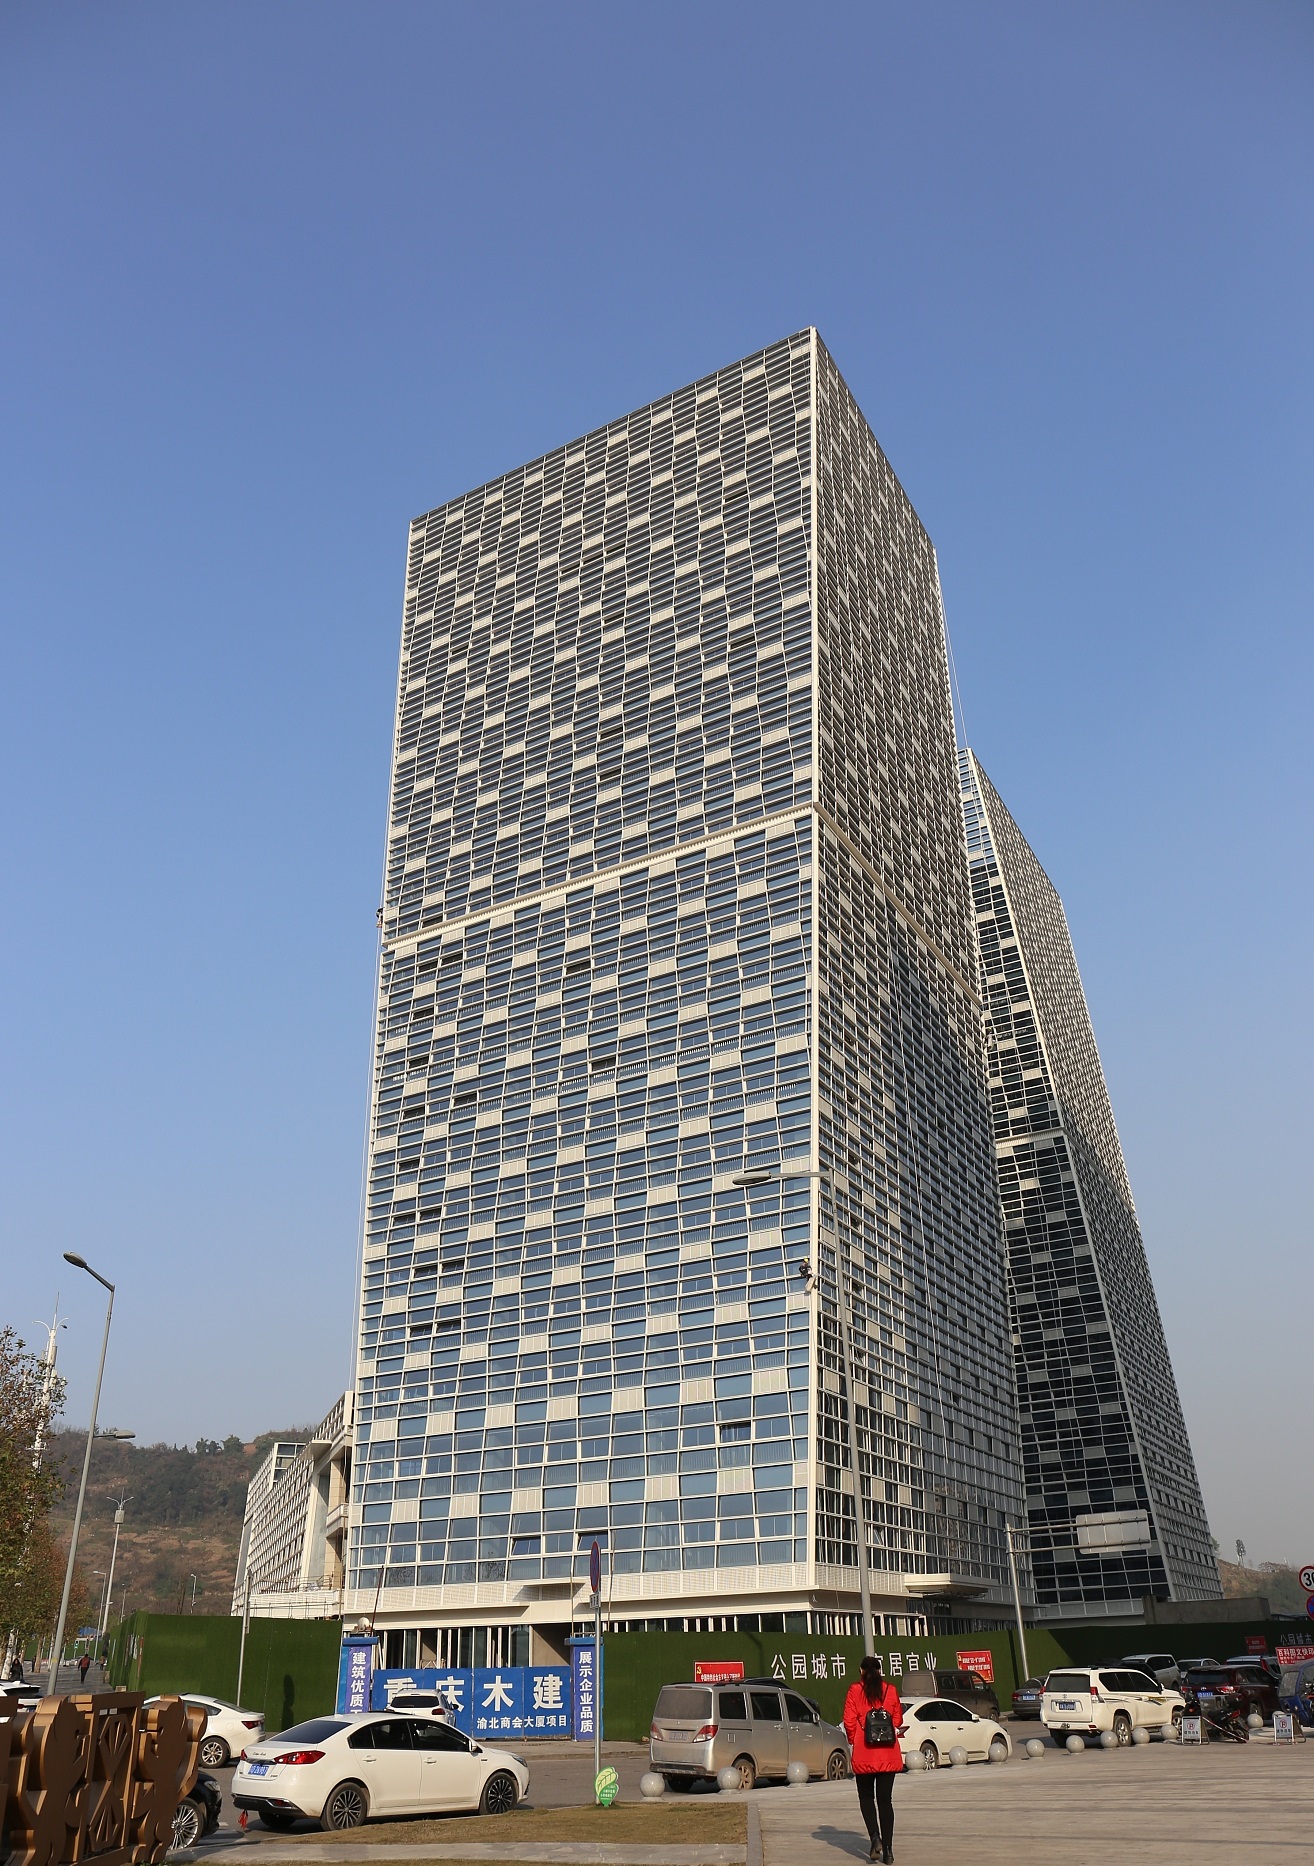 江苏盐城的权健华东国际会议中心位于大丰区经济开发区,造型整体比较